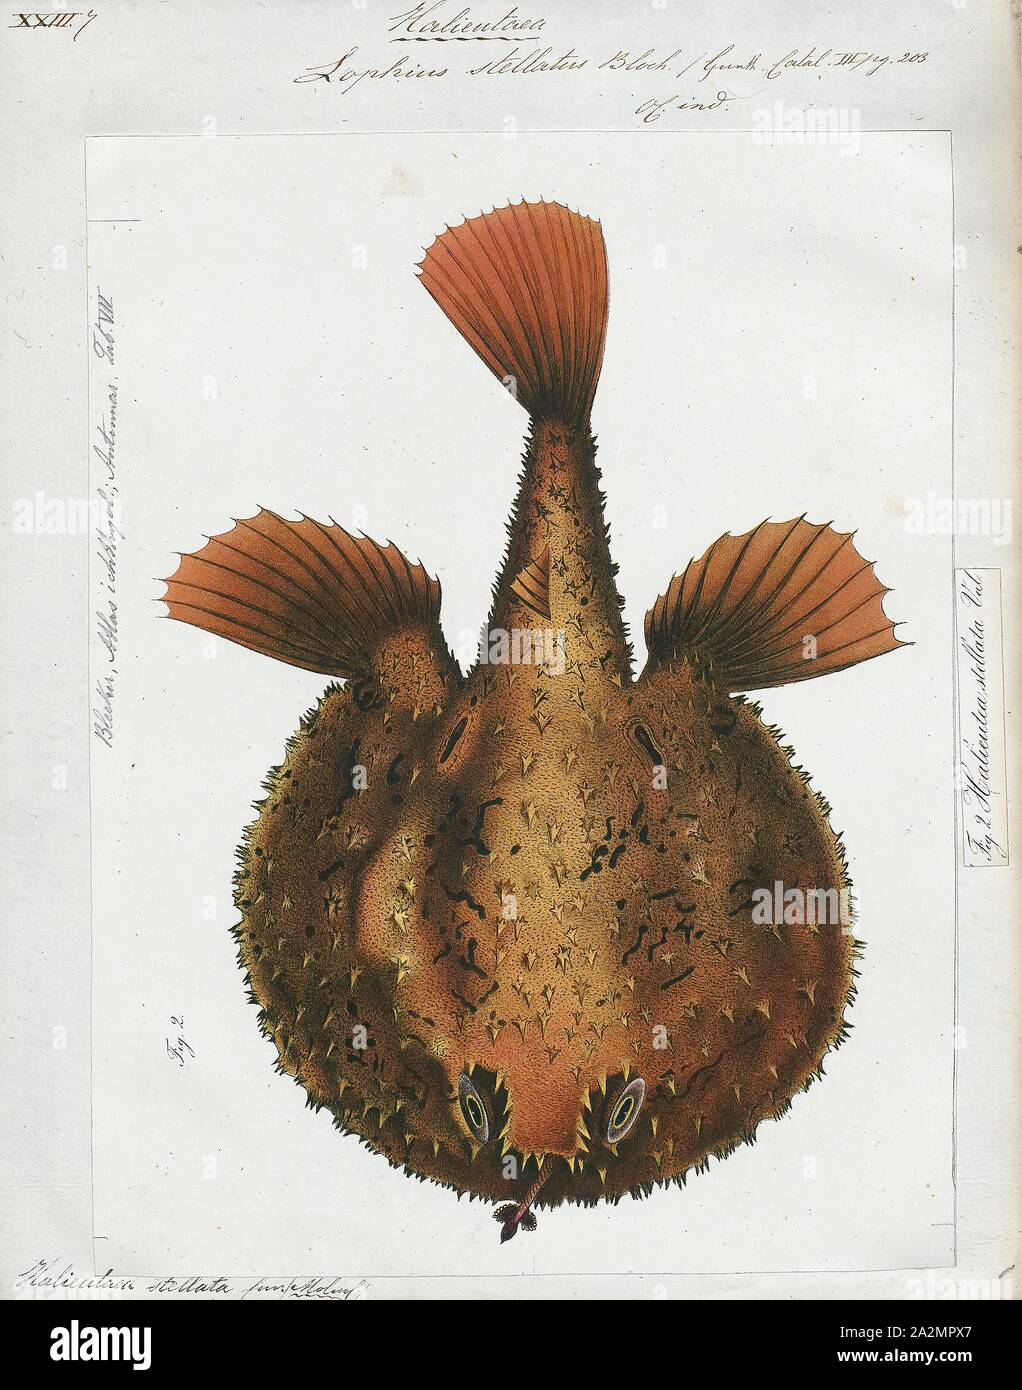 Halieutaea stellata, Drucken, den Sternenhimmel, handfish Halieutaea stellata, ist ein fledermausfische der Familie Ogcocephalidae auf dem Kontinentalsockel des Indopazifik Ozeane in Tiefen zwischen 50 und 400 m gefunden. Sie sind bis zu 30 cm langen, oberer Teil Stockfoto